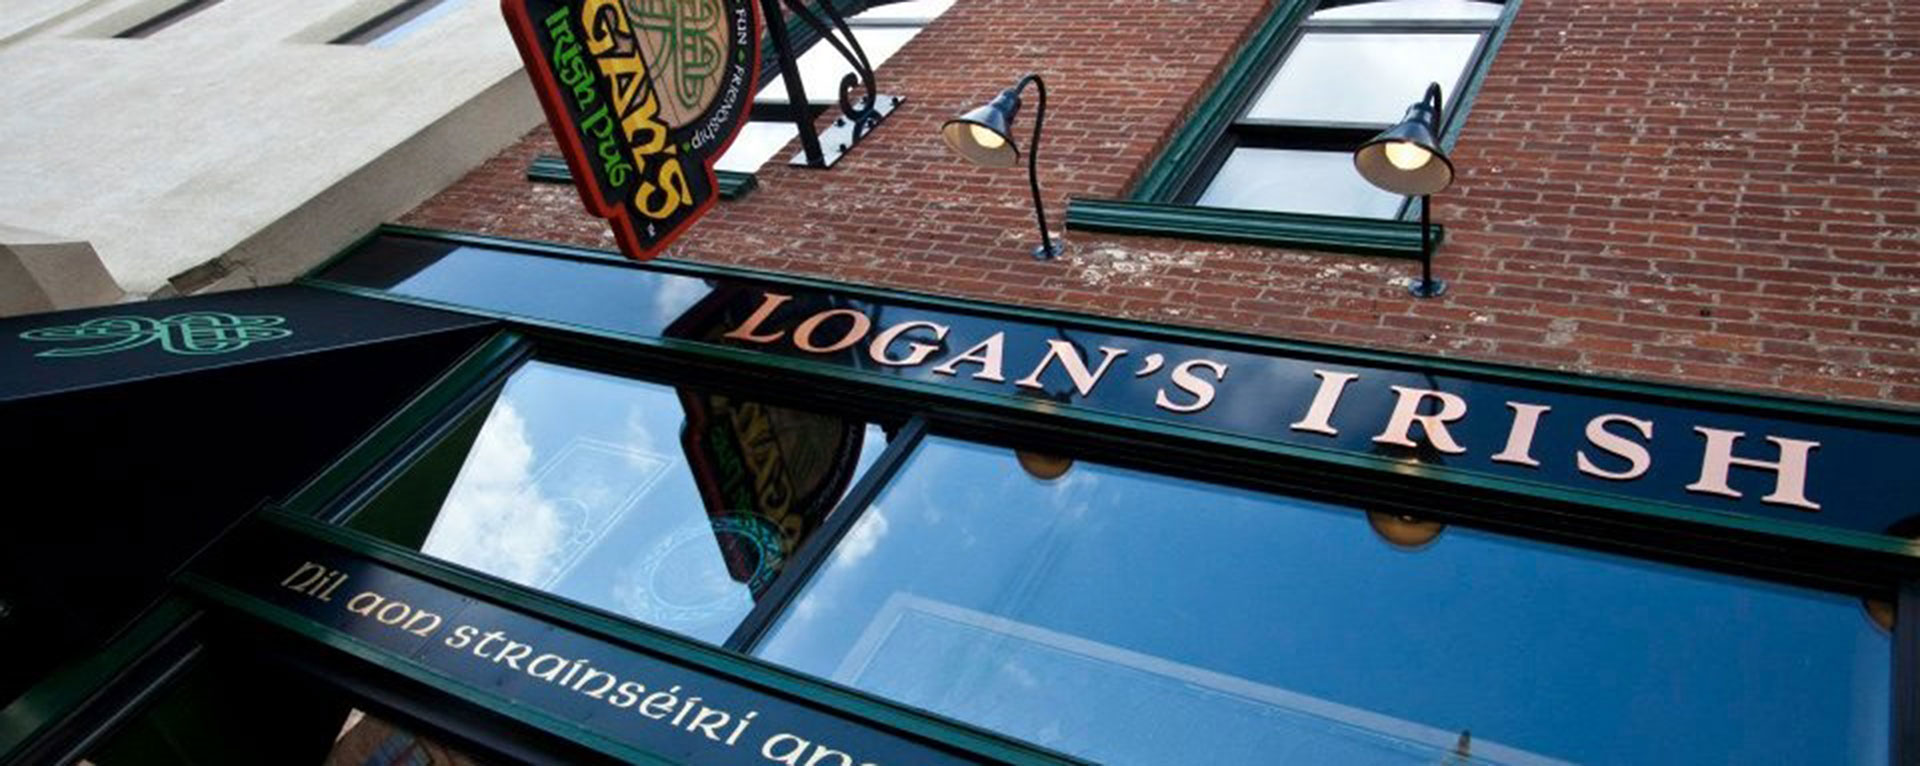 Logan’s Irish Pub, Findlay, OH